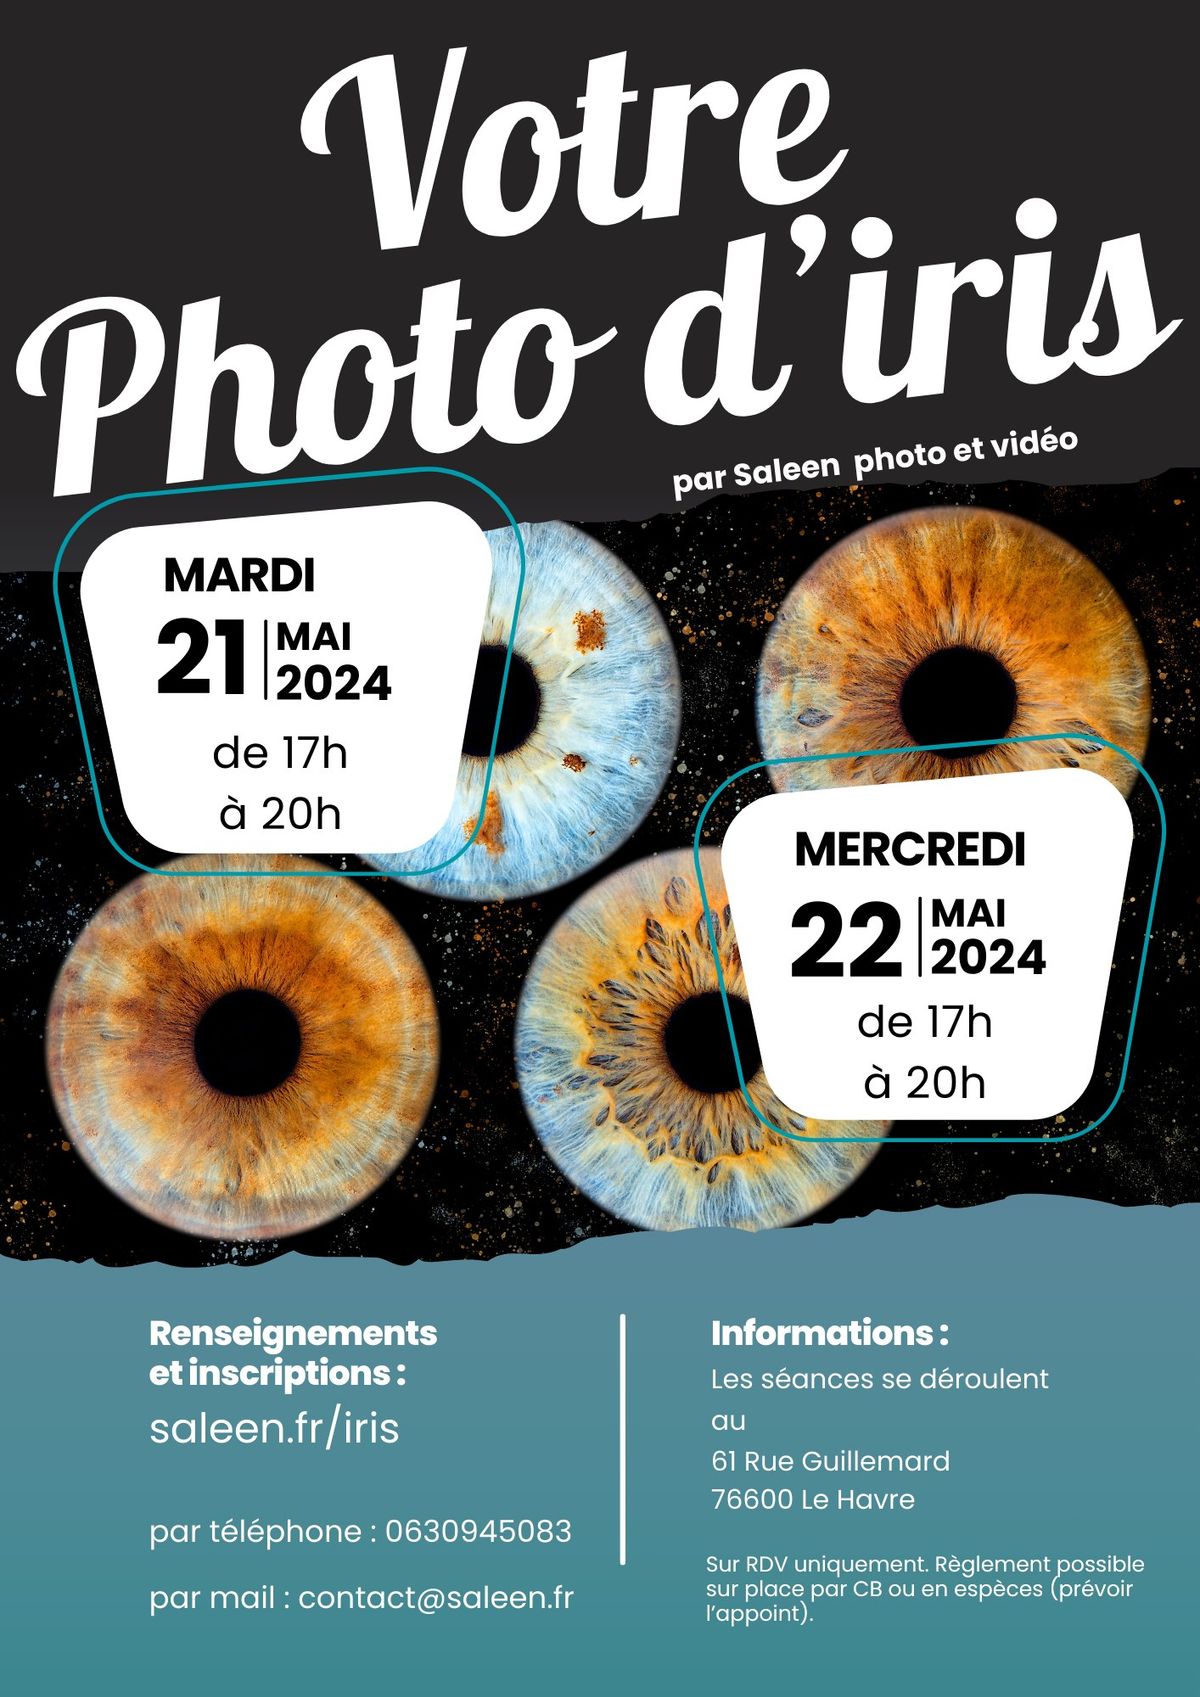 Votre photo d'iris au Havre les 21 et 22 mai 2024